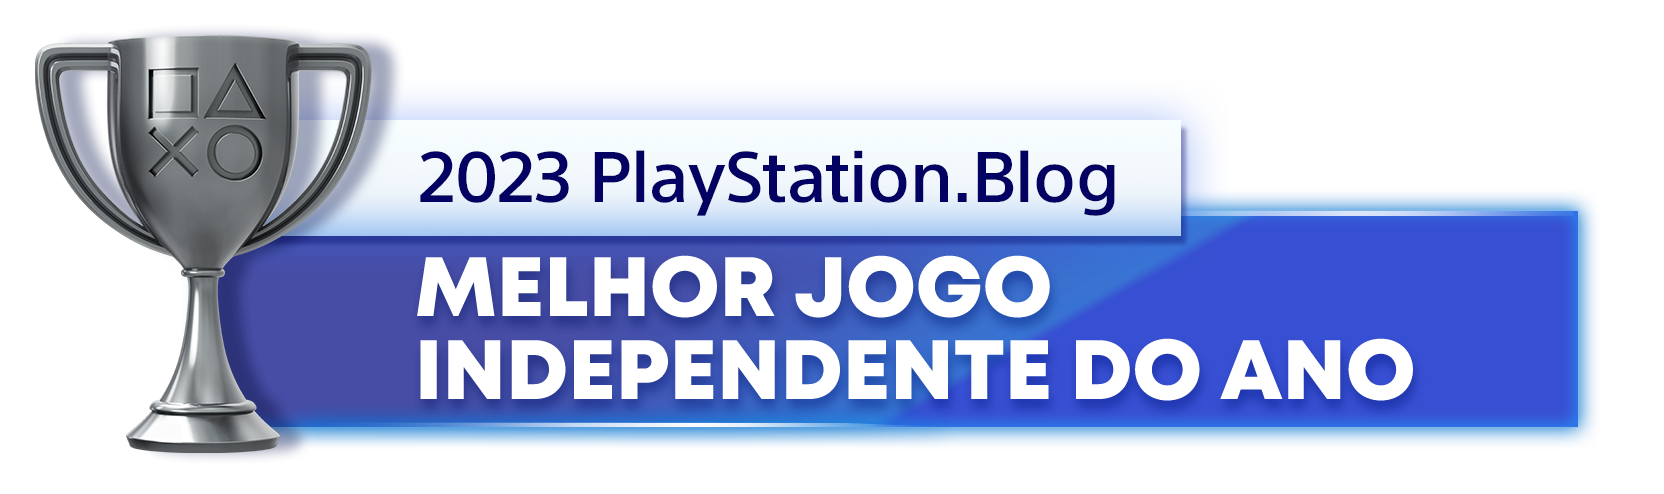  "Troféu de Prata para o vencedor da categoria Melhor Jogo Independente do Ano de 2023 do PlayStation Blog"